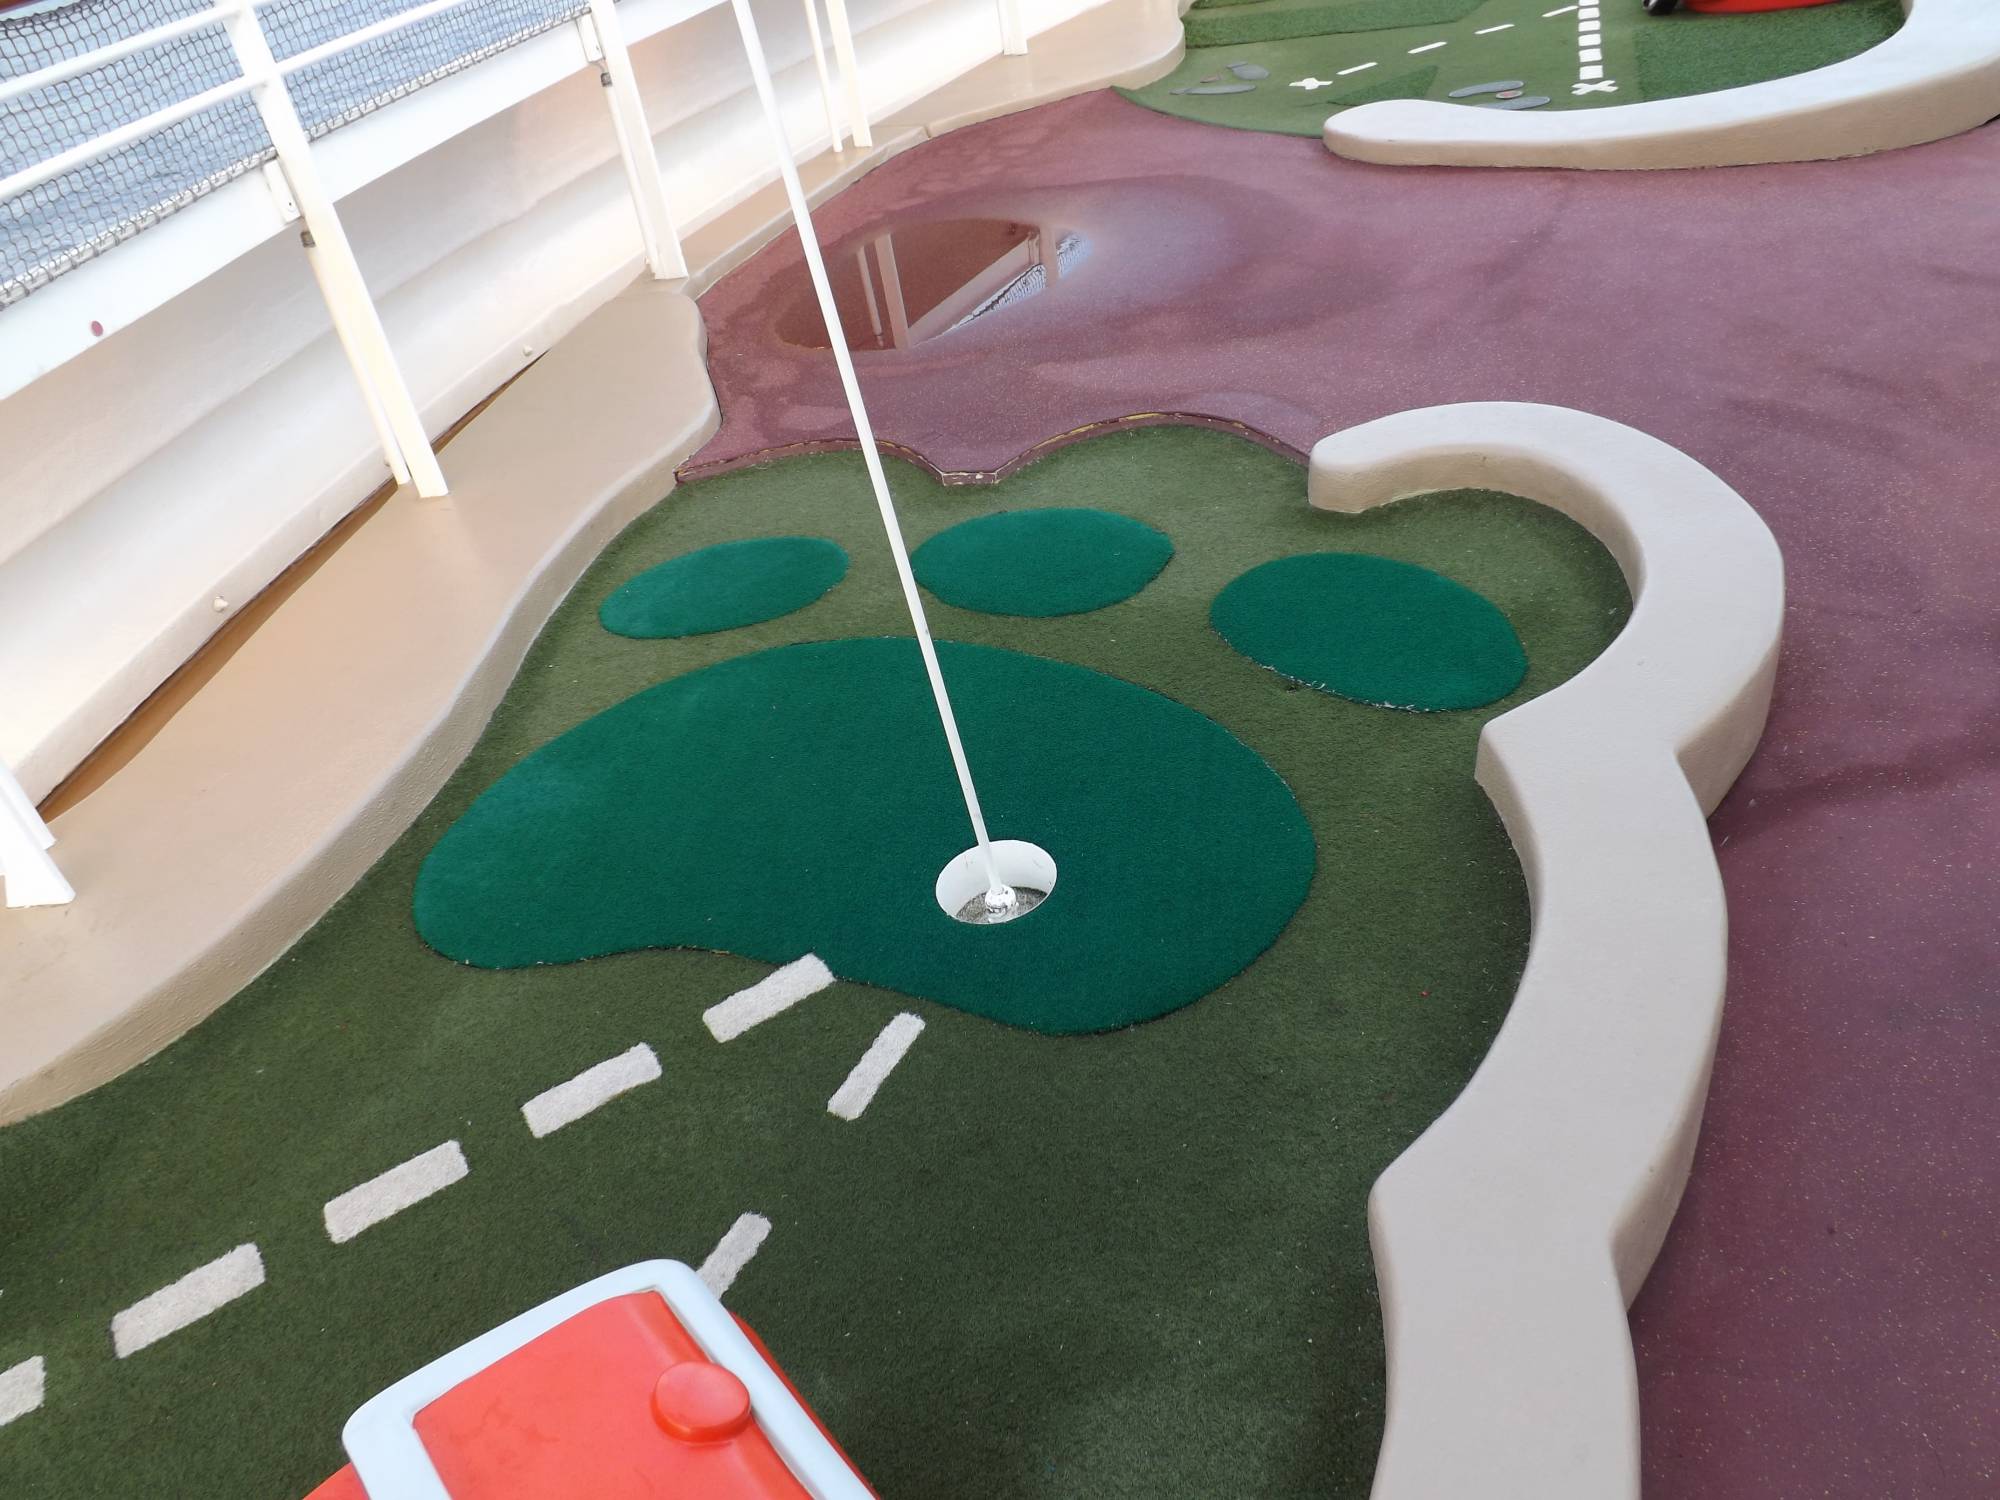 Goofy's Sport's Deck - Miniature Golf